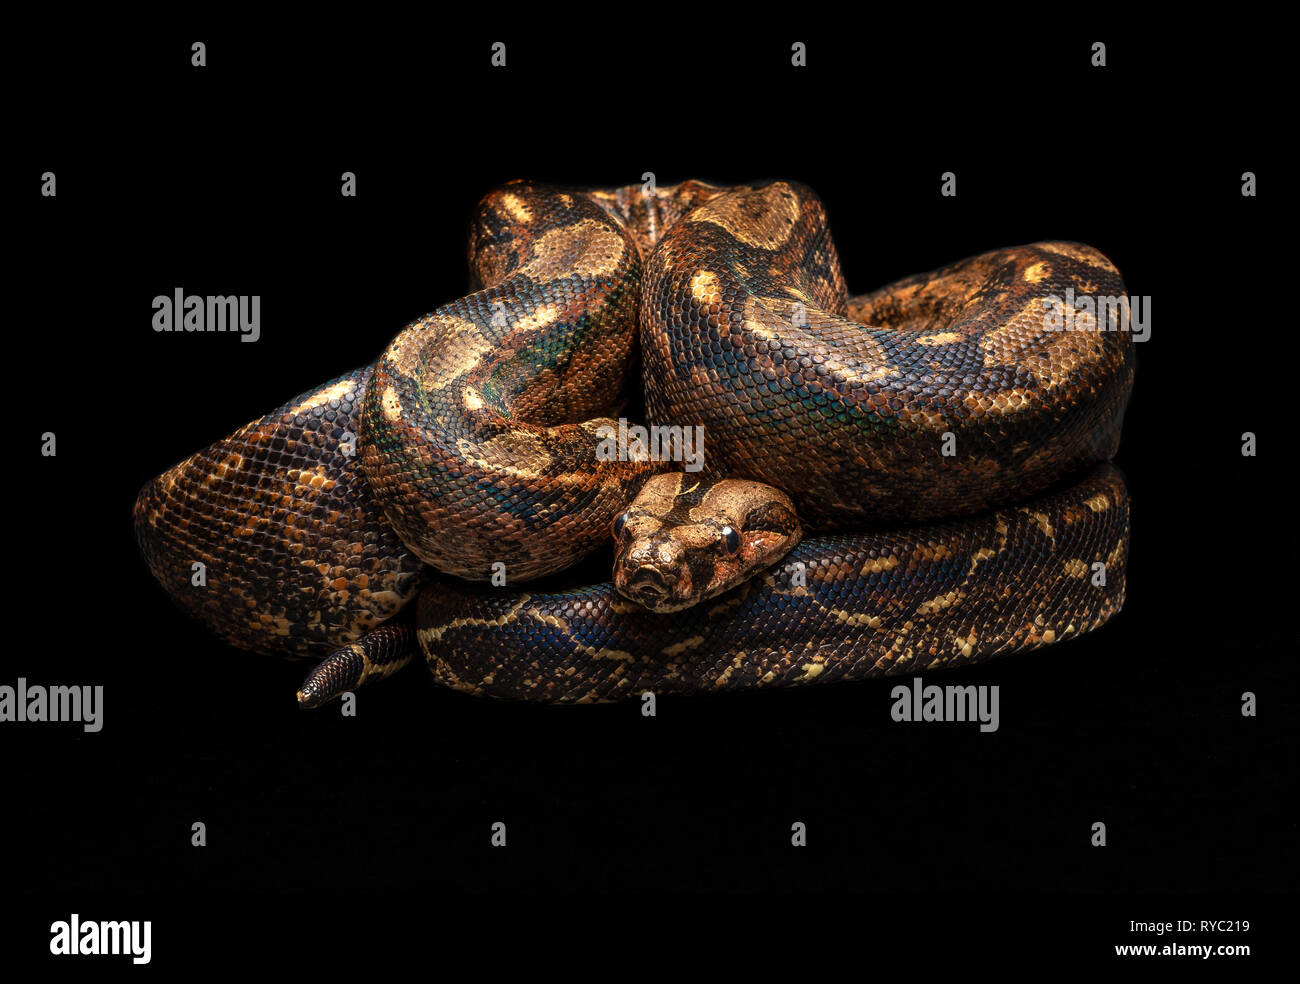 Mexican Boa - Boa imperator southwest snake non venomous Stock Photo